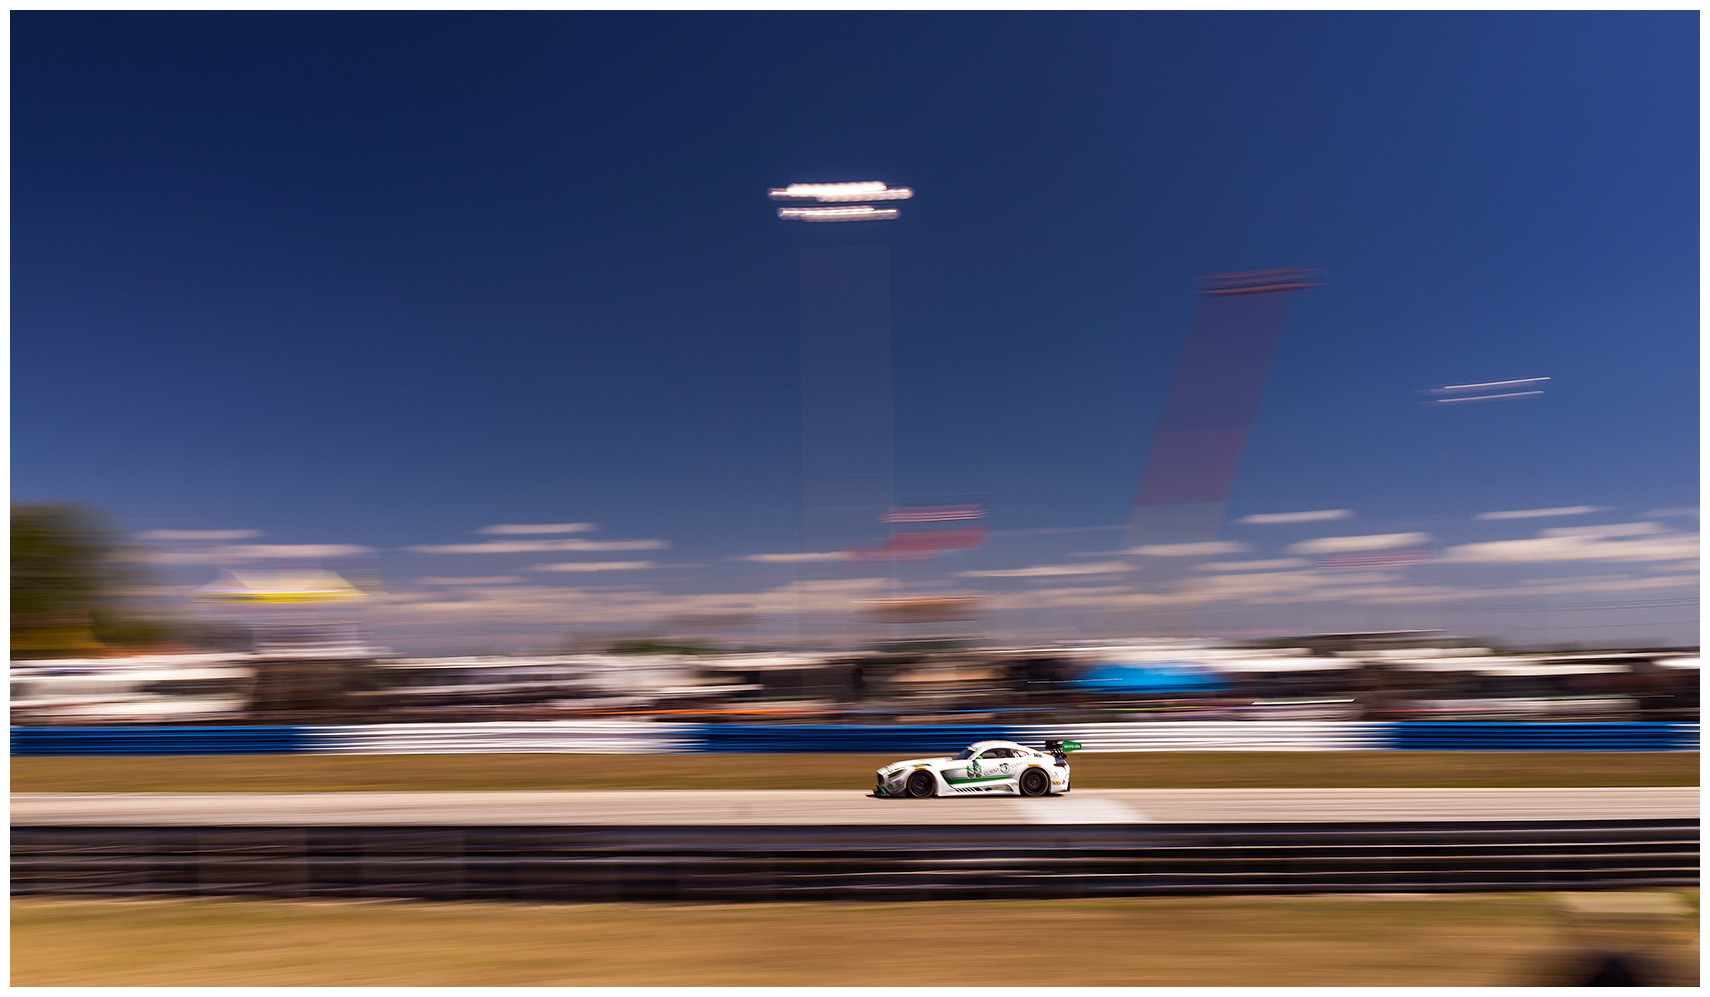 mercedes-AMG-sebring-riley-motorsports-GT3